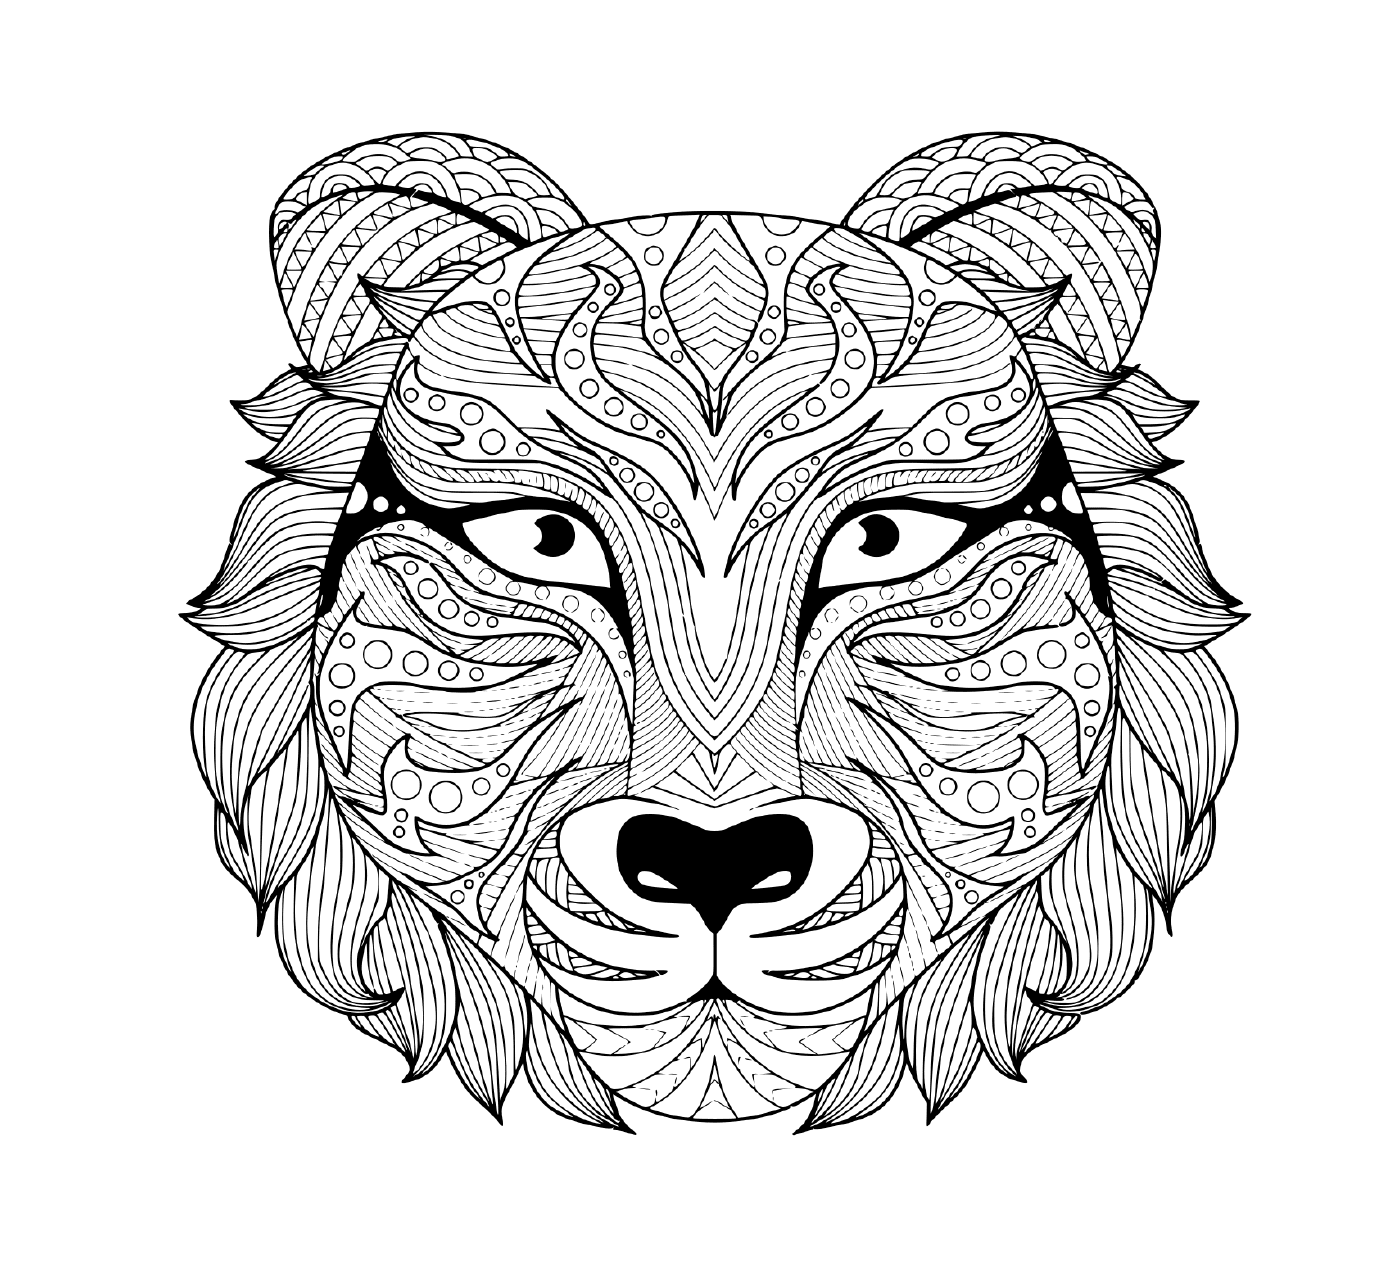  eine tätowierte Darstellung eines erwachsenen Tigerkopfes mit bunten Augen 